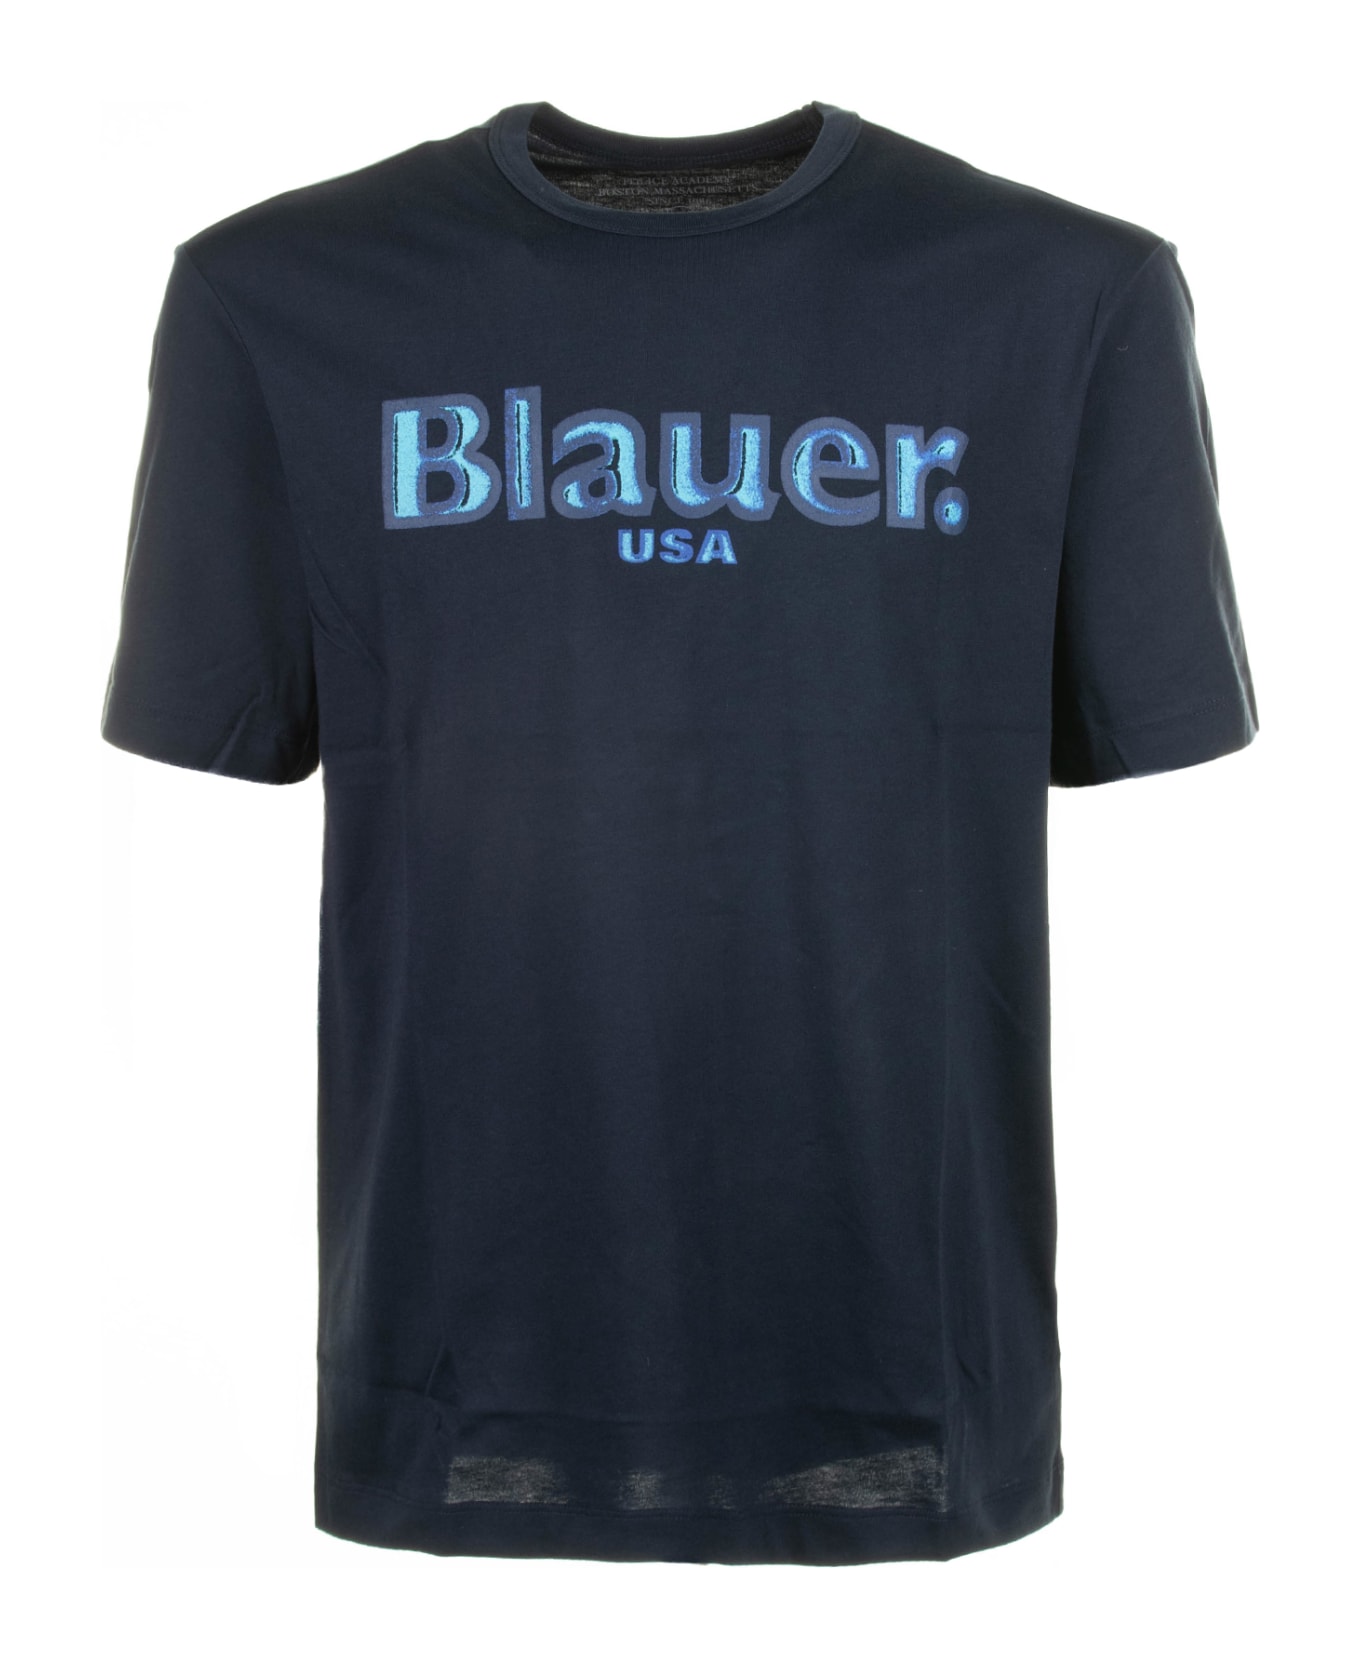 Blauer Blue Crew Neck T-shirt In Cotton - Blu シャツ